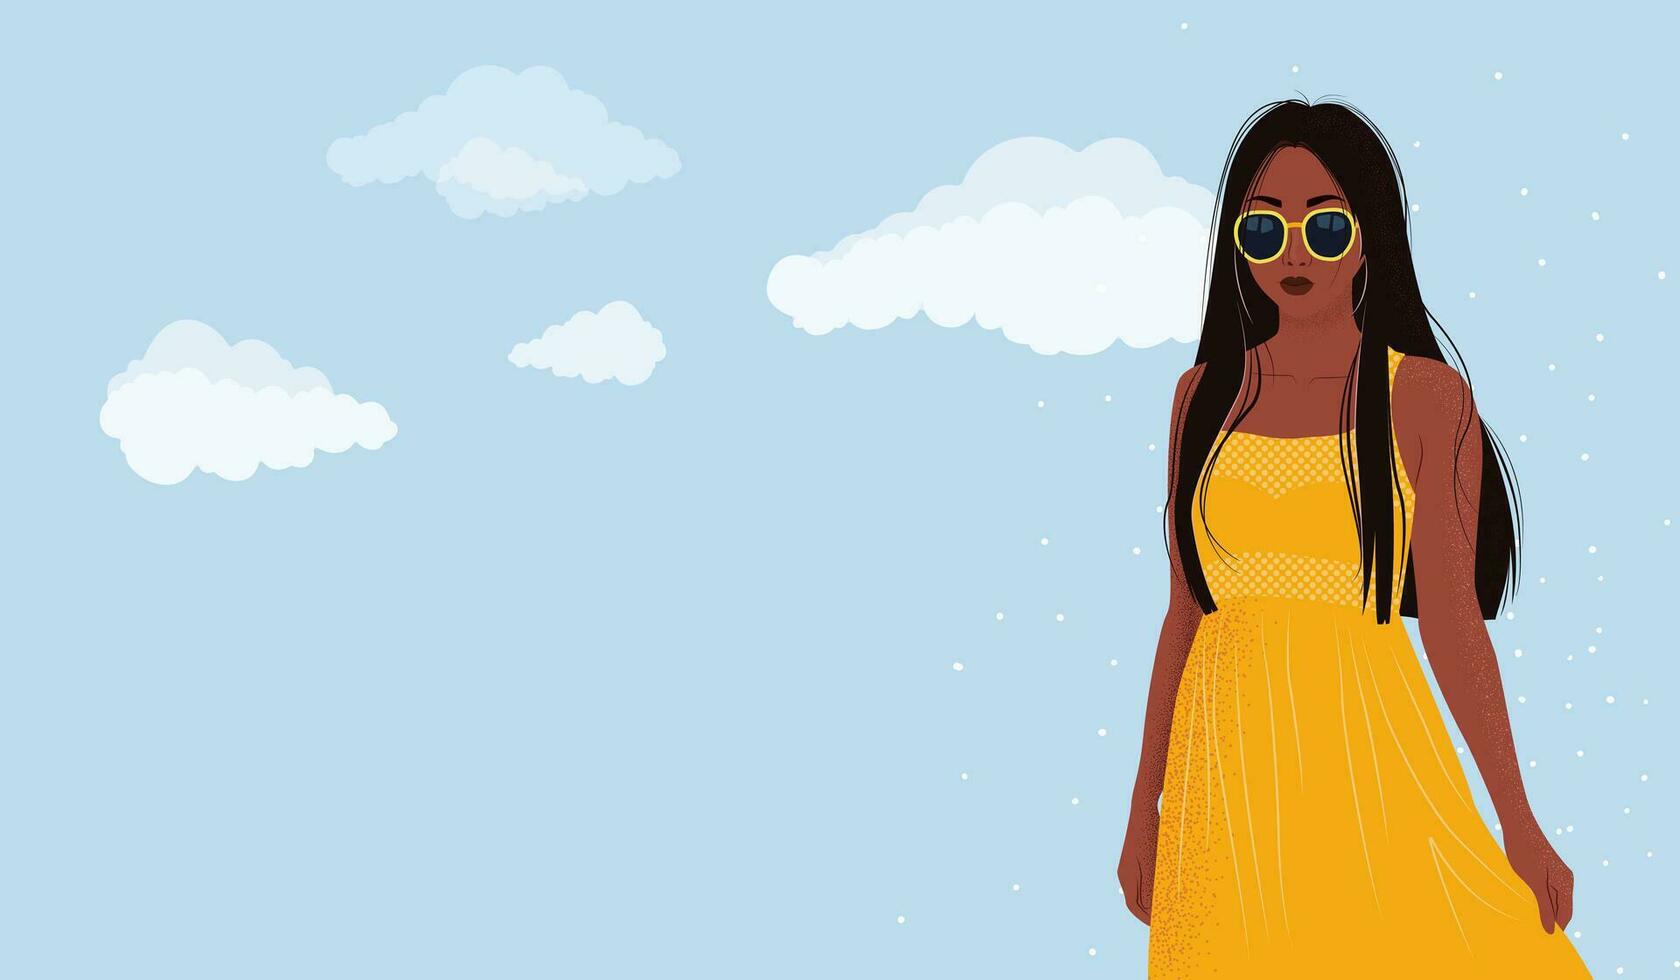 vektor horisontell baner. söt illustration av afrikansk amerikan kvinna i gul klänning och solglasögon. affisch eller webb baner för försäljning, annons, hängsmycke, broschyr med himmel och moln. modern konst.